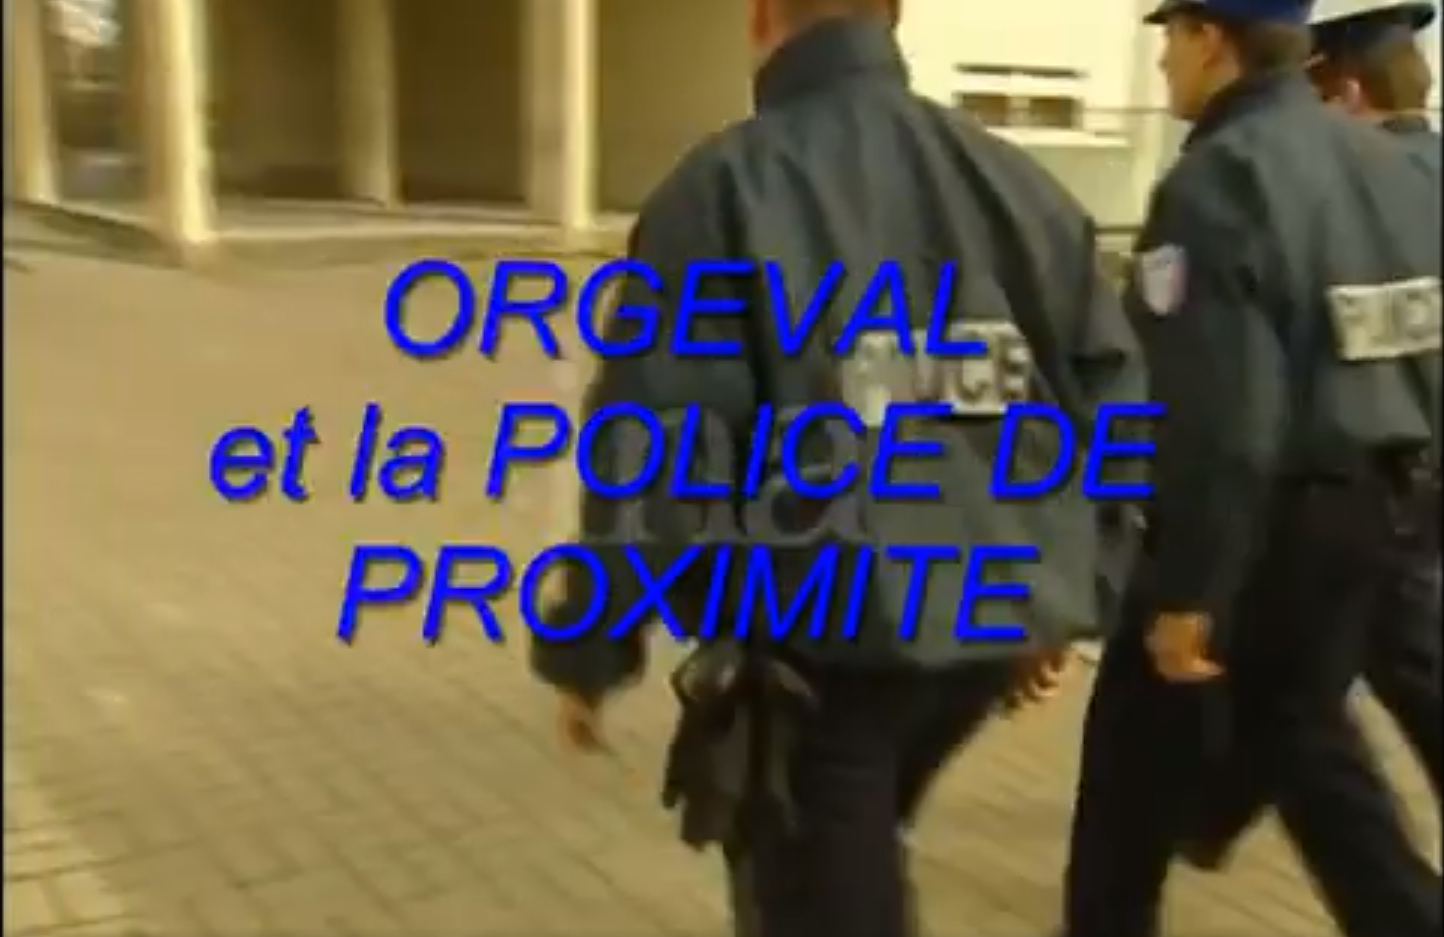 ORGEVAL POLICE DE PROXIMITE